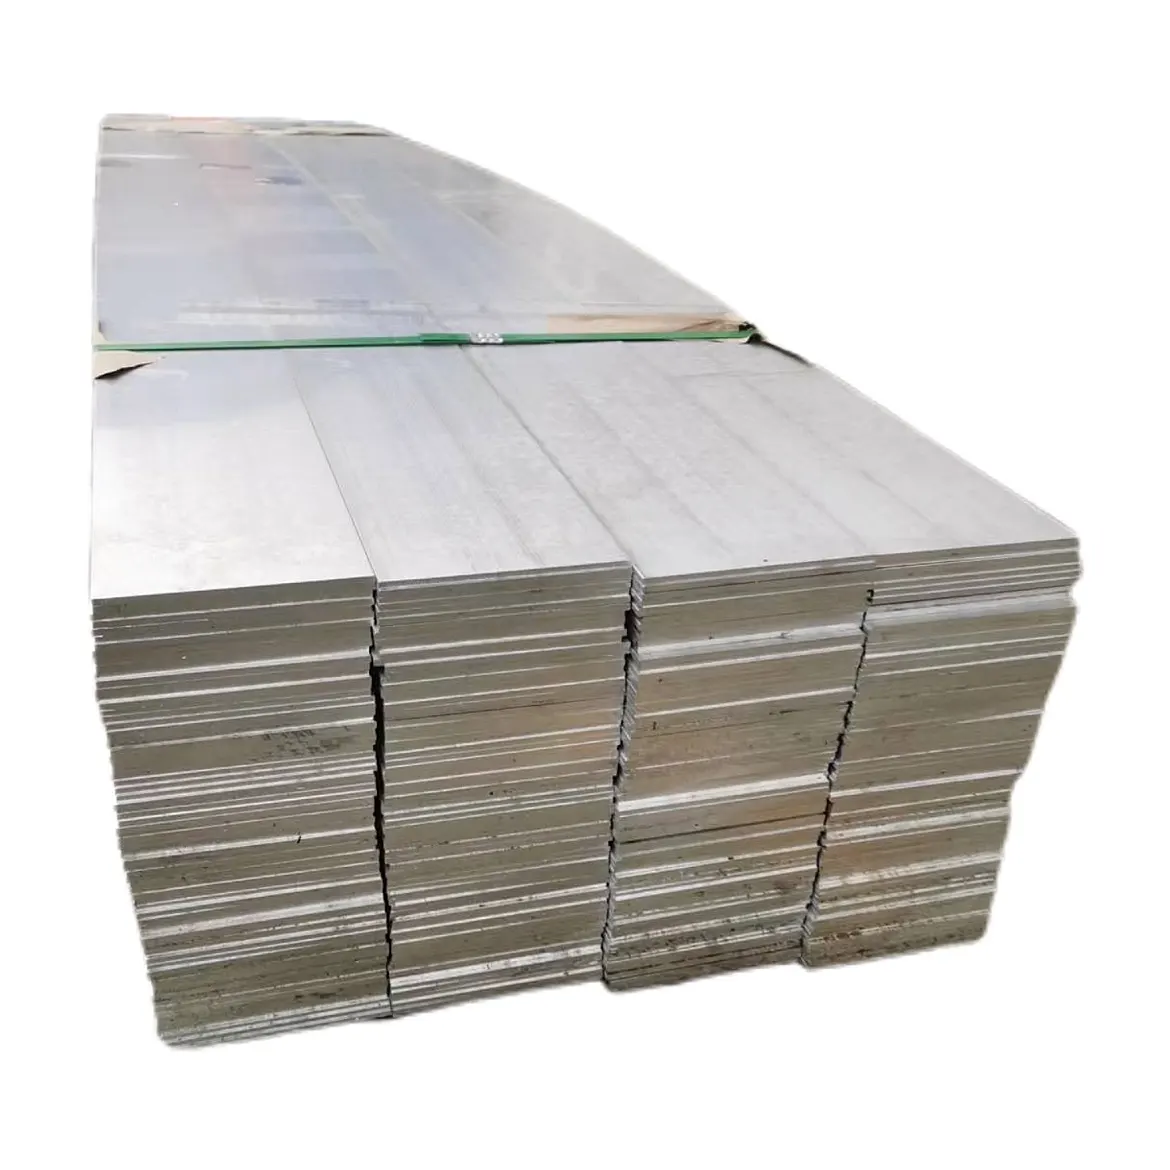 Aluminium manufacturer perfiles de aluminio 6063 t5 extruded industrial aluminum sheets alu alloy plate